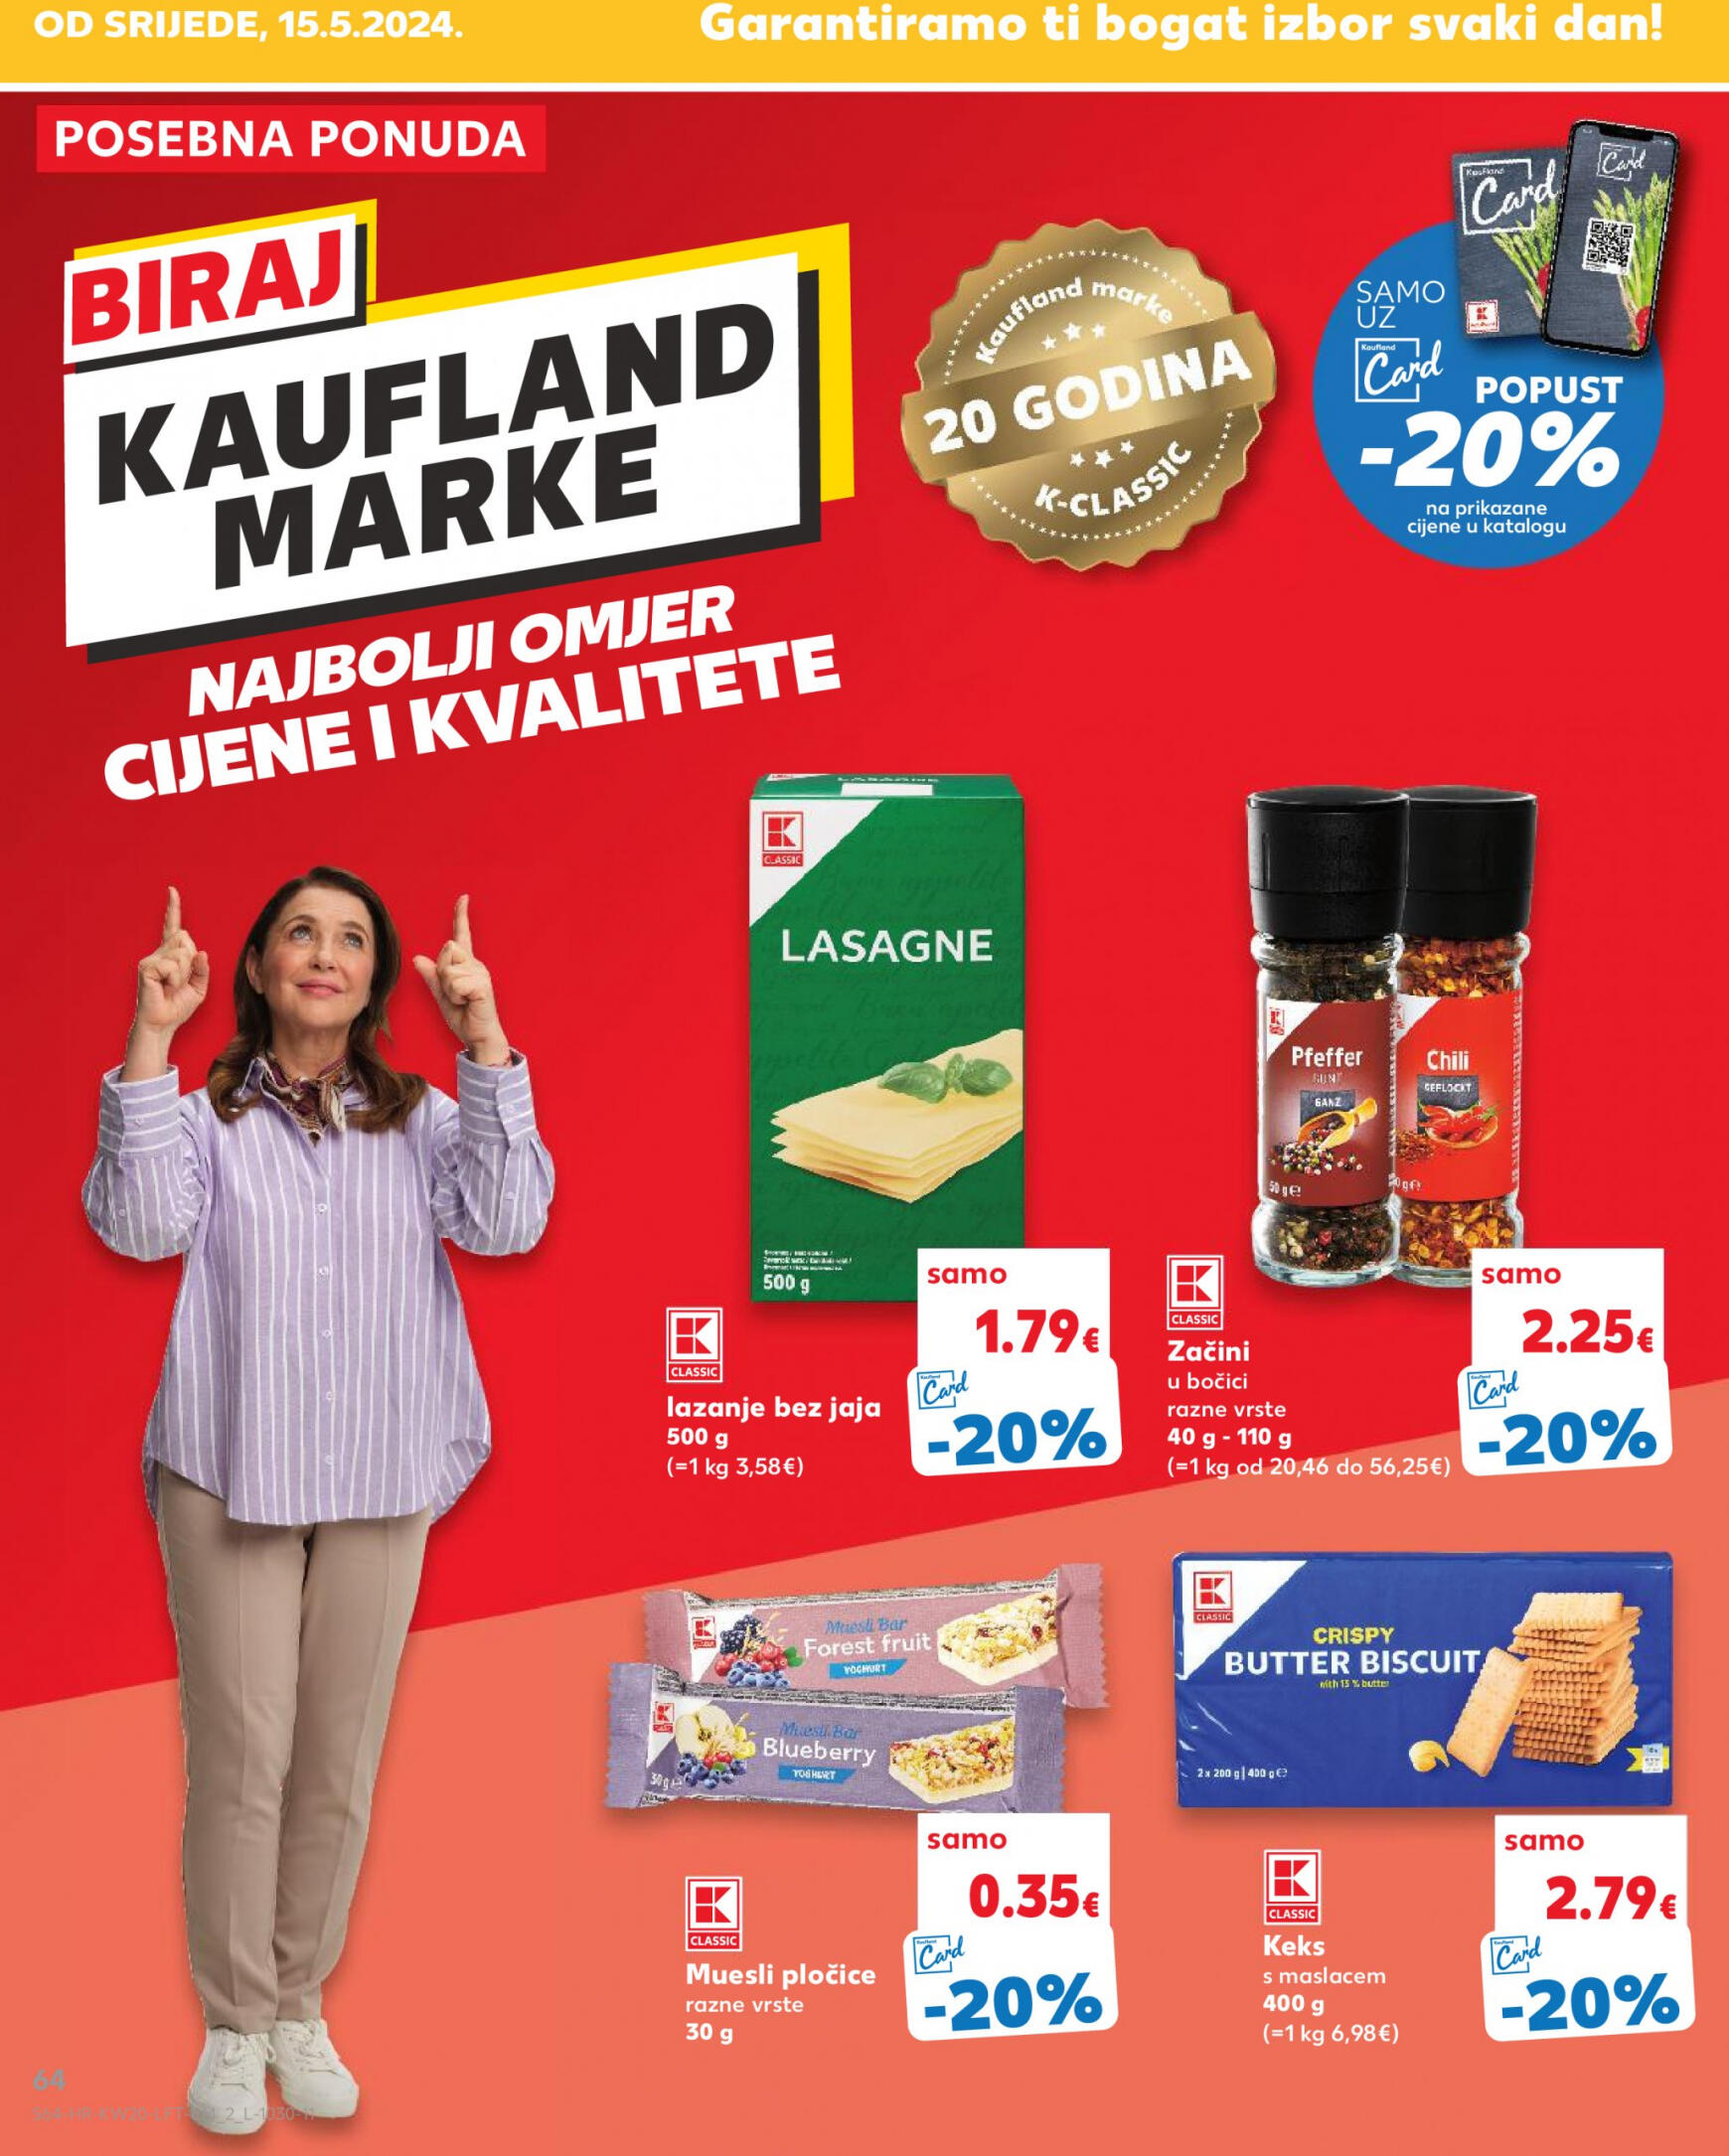 kaufland - Novi katalog Kaufland 15.05. - 21.05. - page: 64